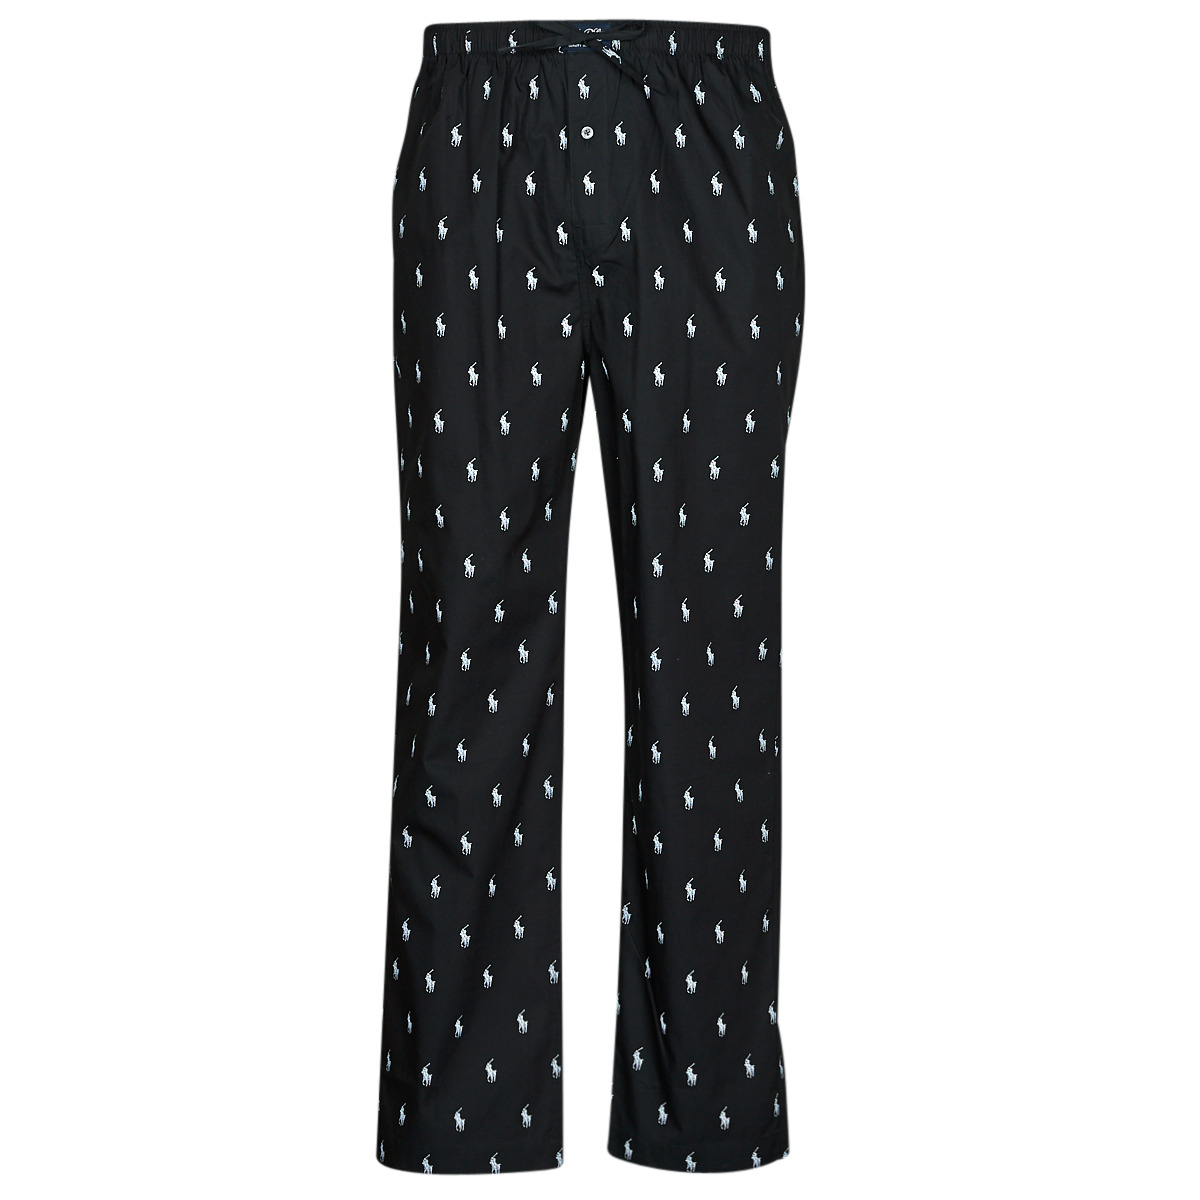 Oblačila Pižame & Spalne srajce Polo Ralph Lauren SLEEPWEAR-PJ PANT-SLEEP-BOTTOM Črna / Bela